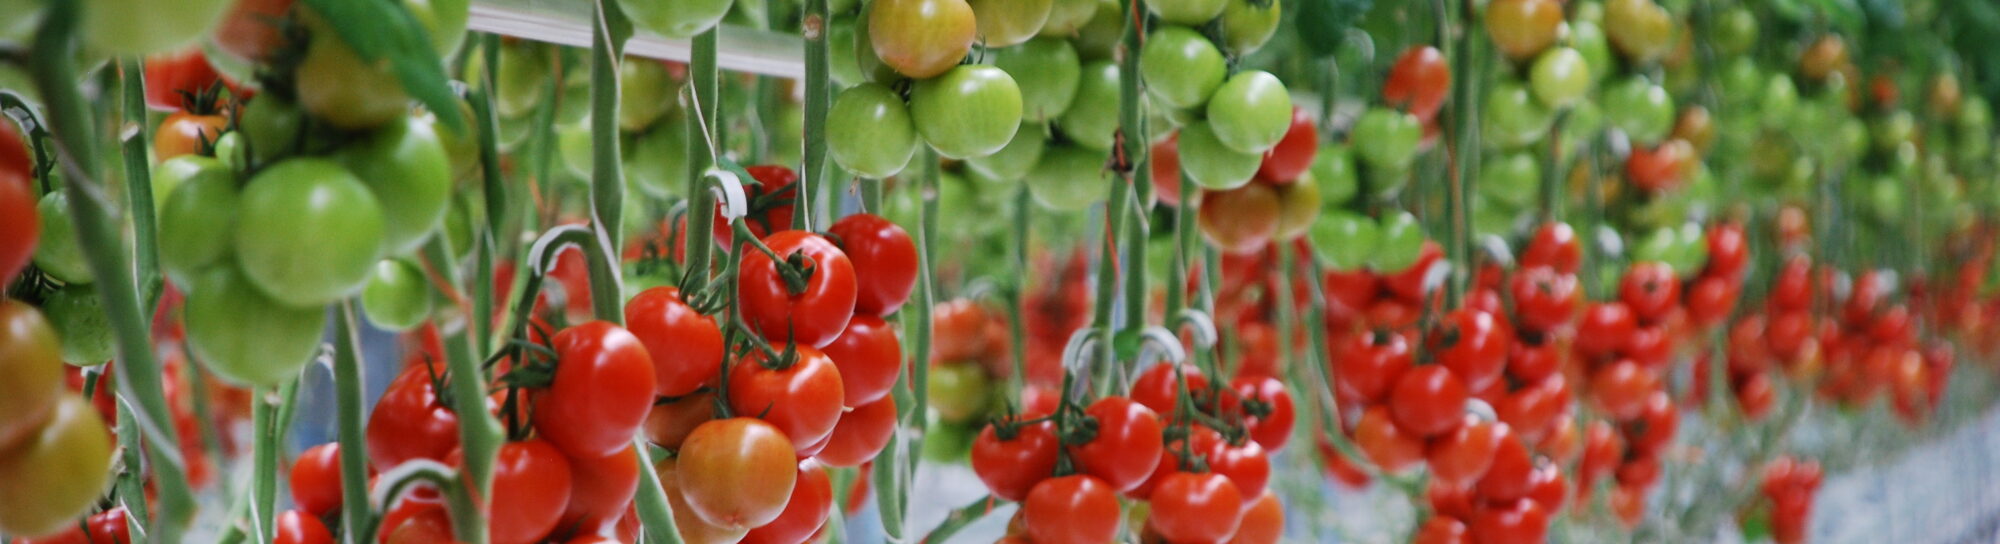 Auf dem Weg zur optimalen Tomate